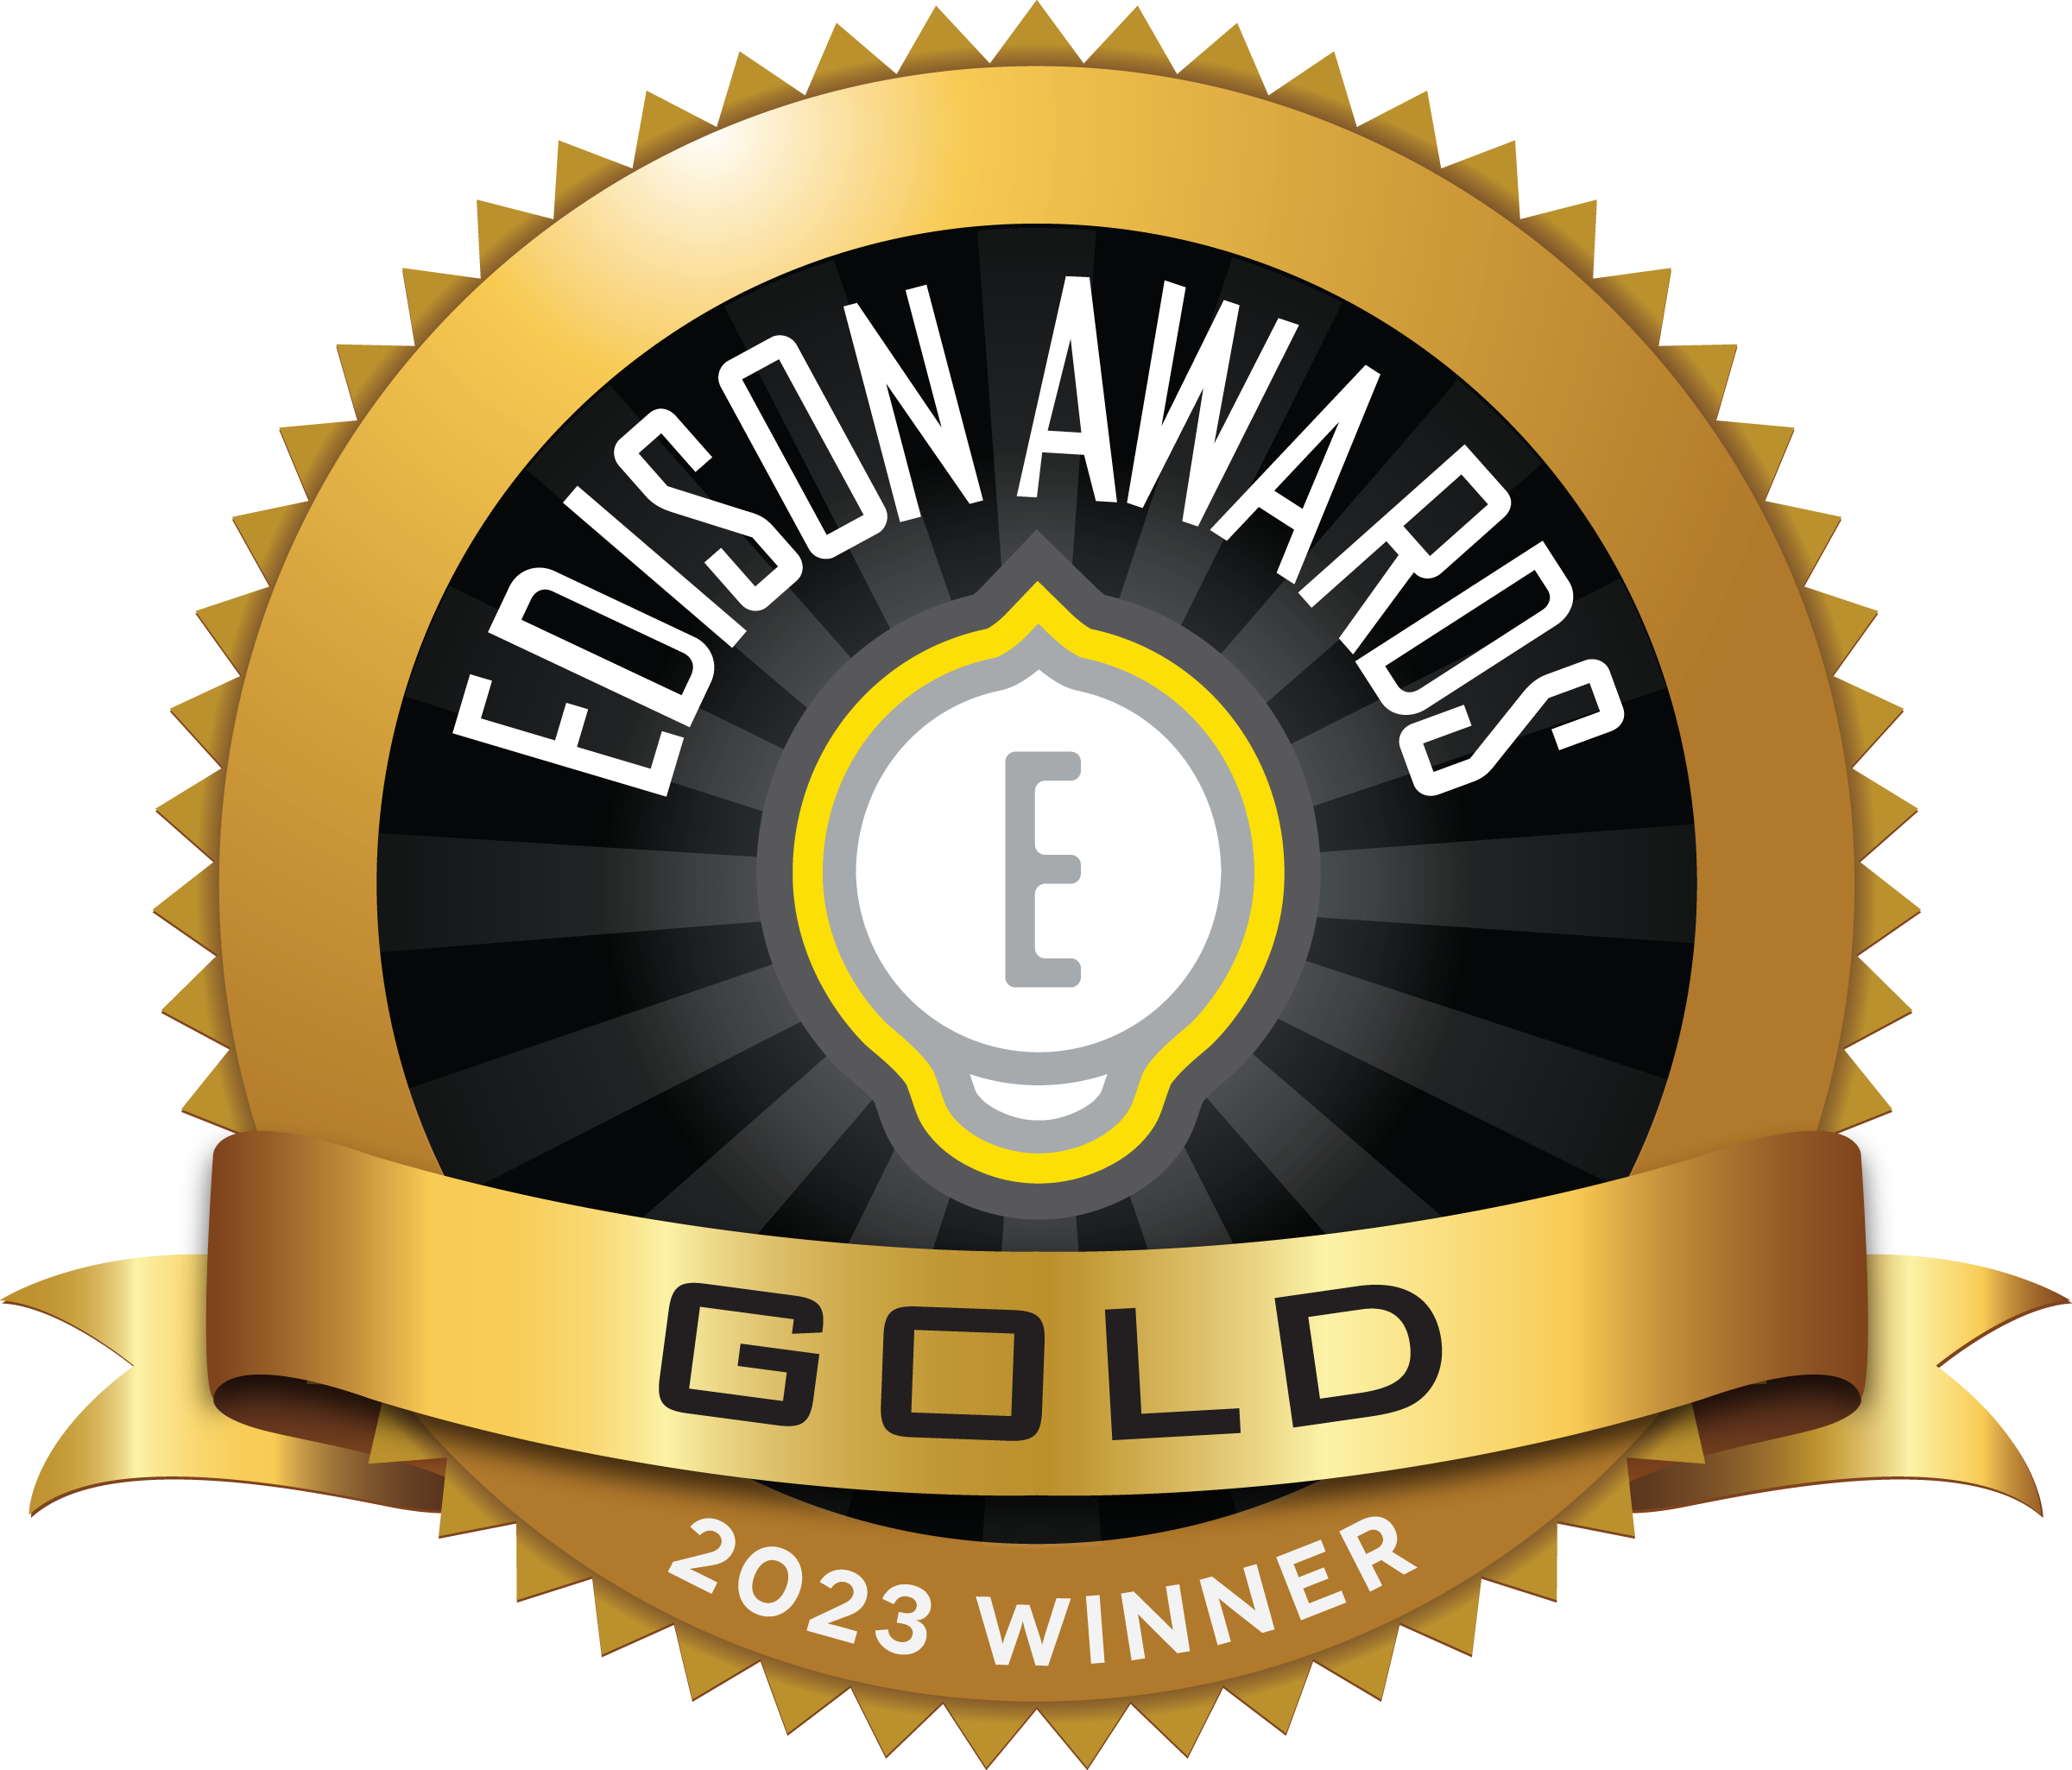 Edison Awards Gold 2023 Winner